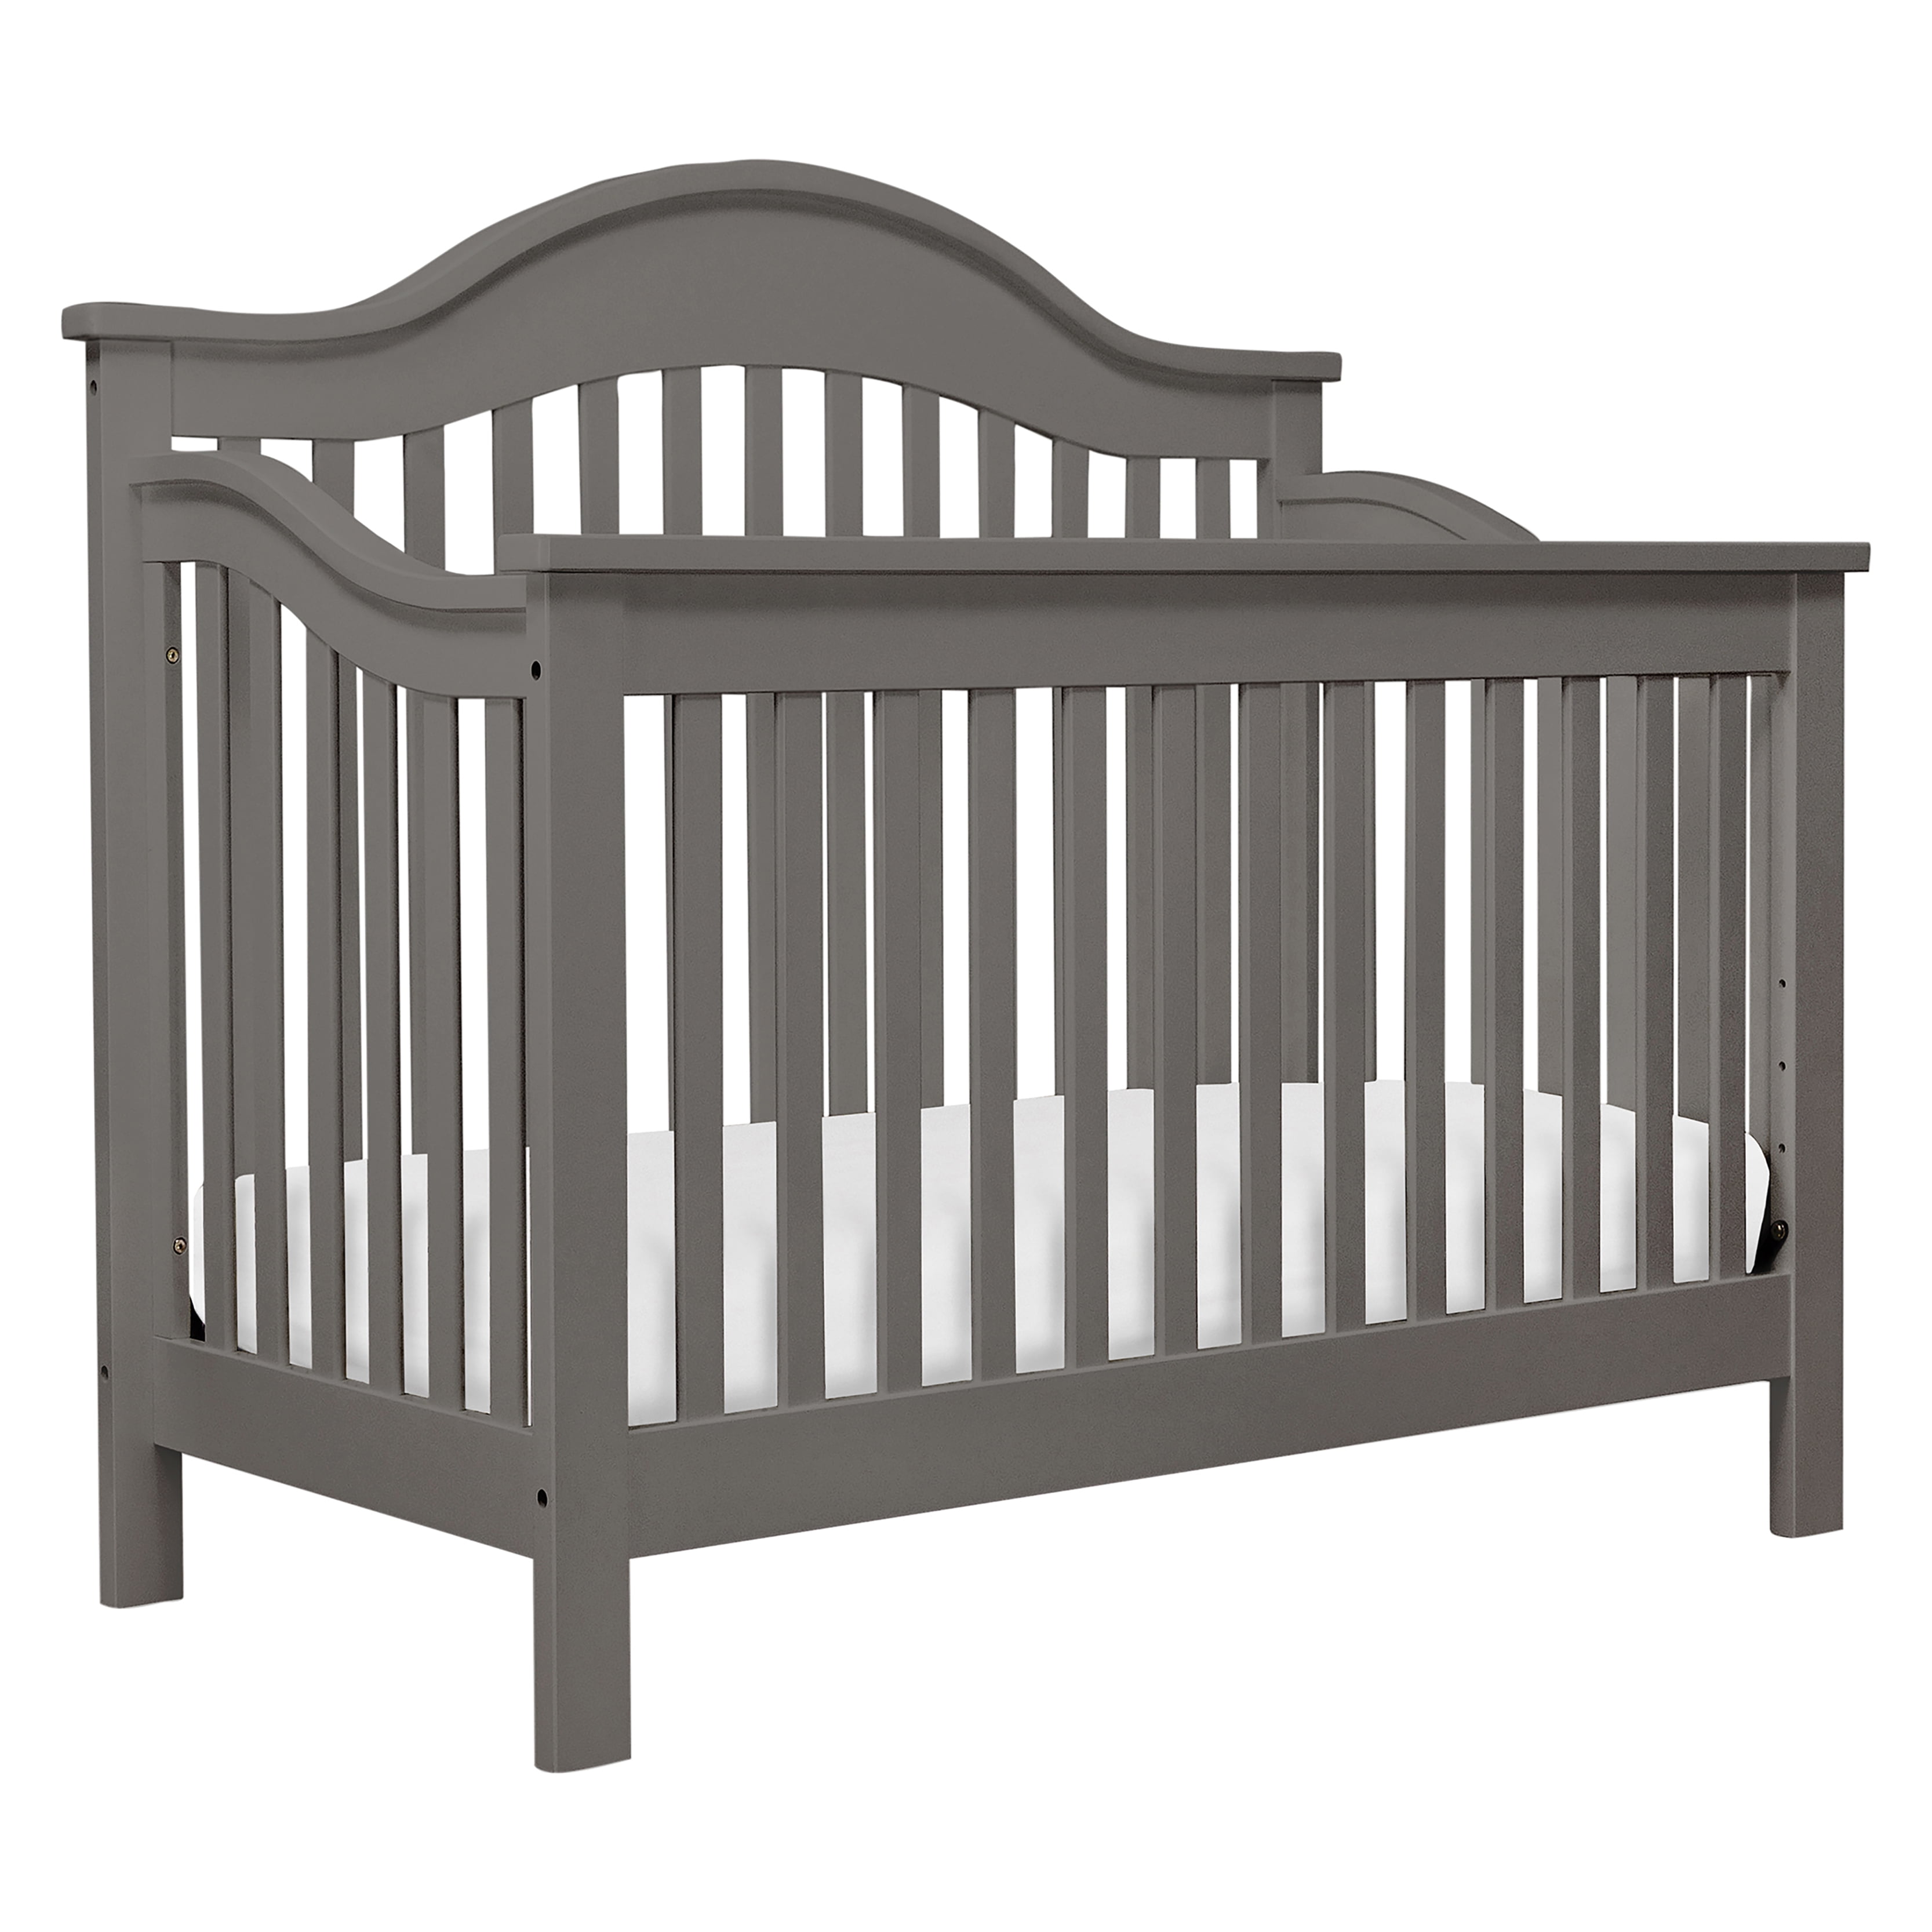 davinci baby crib